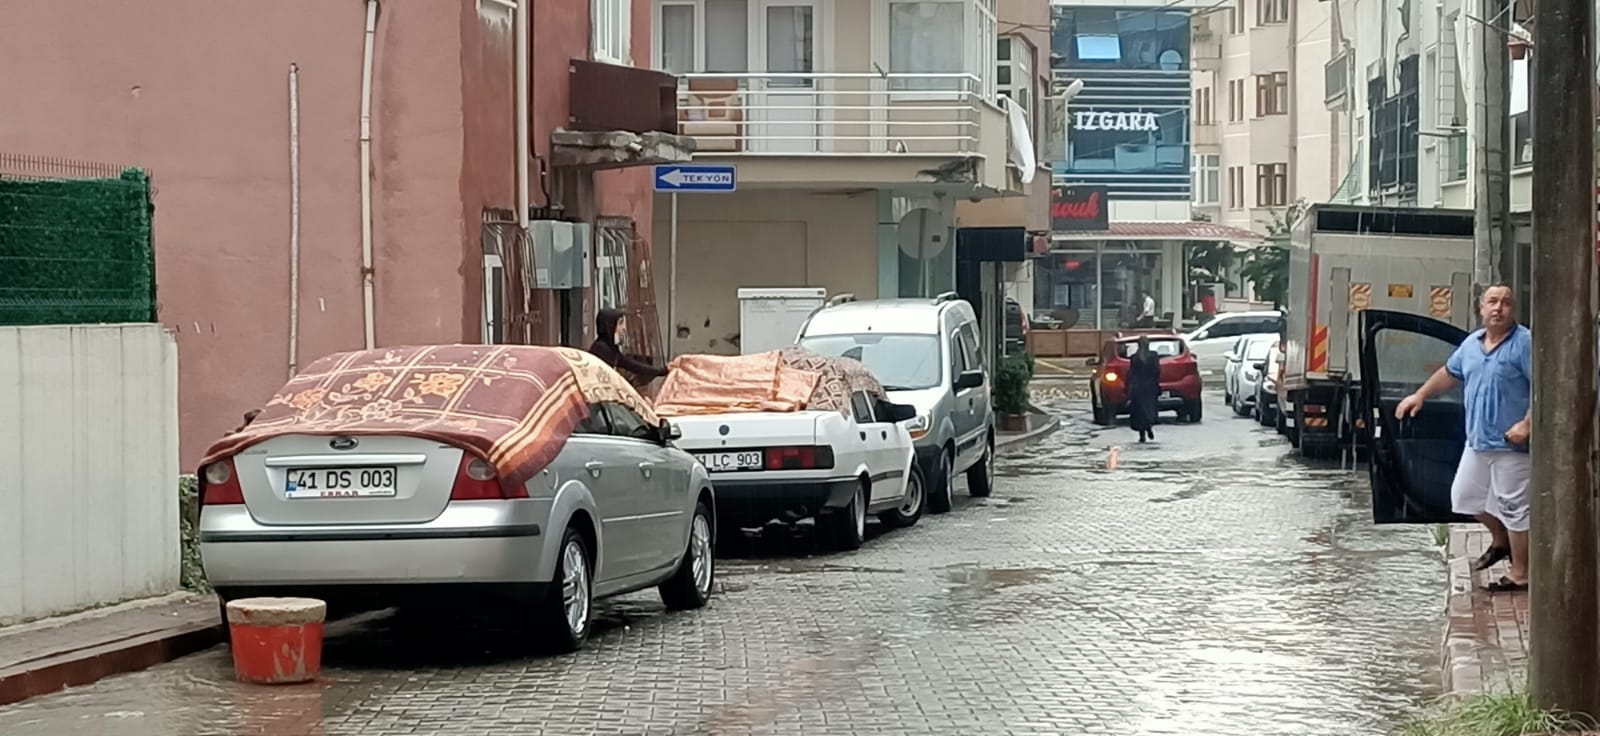 Kocaeli'de vatandaşlar doluya karşı halı ve kilimlerle önlem aldılar